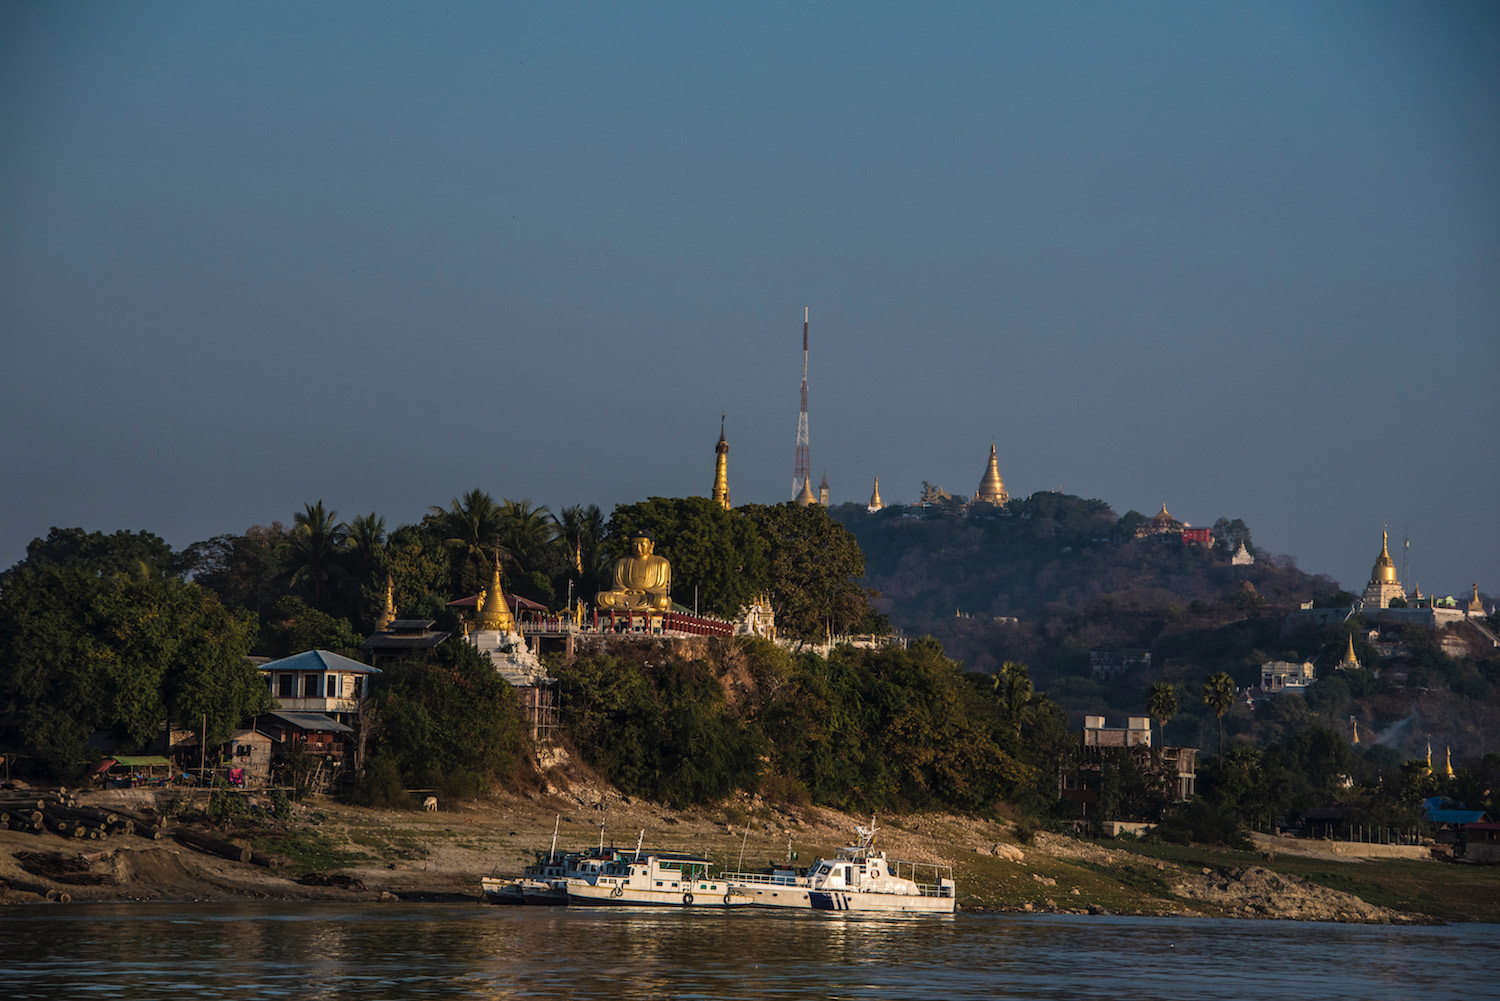 Boat from Mandalay to Bagan